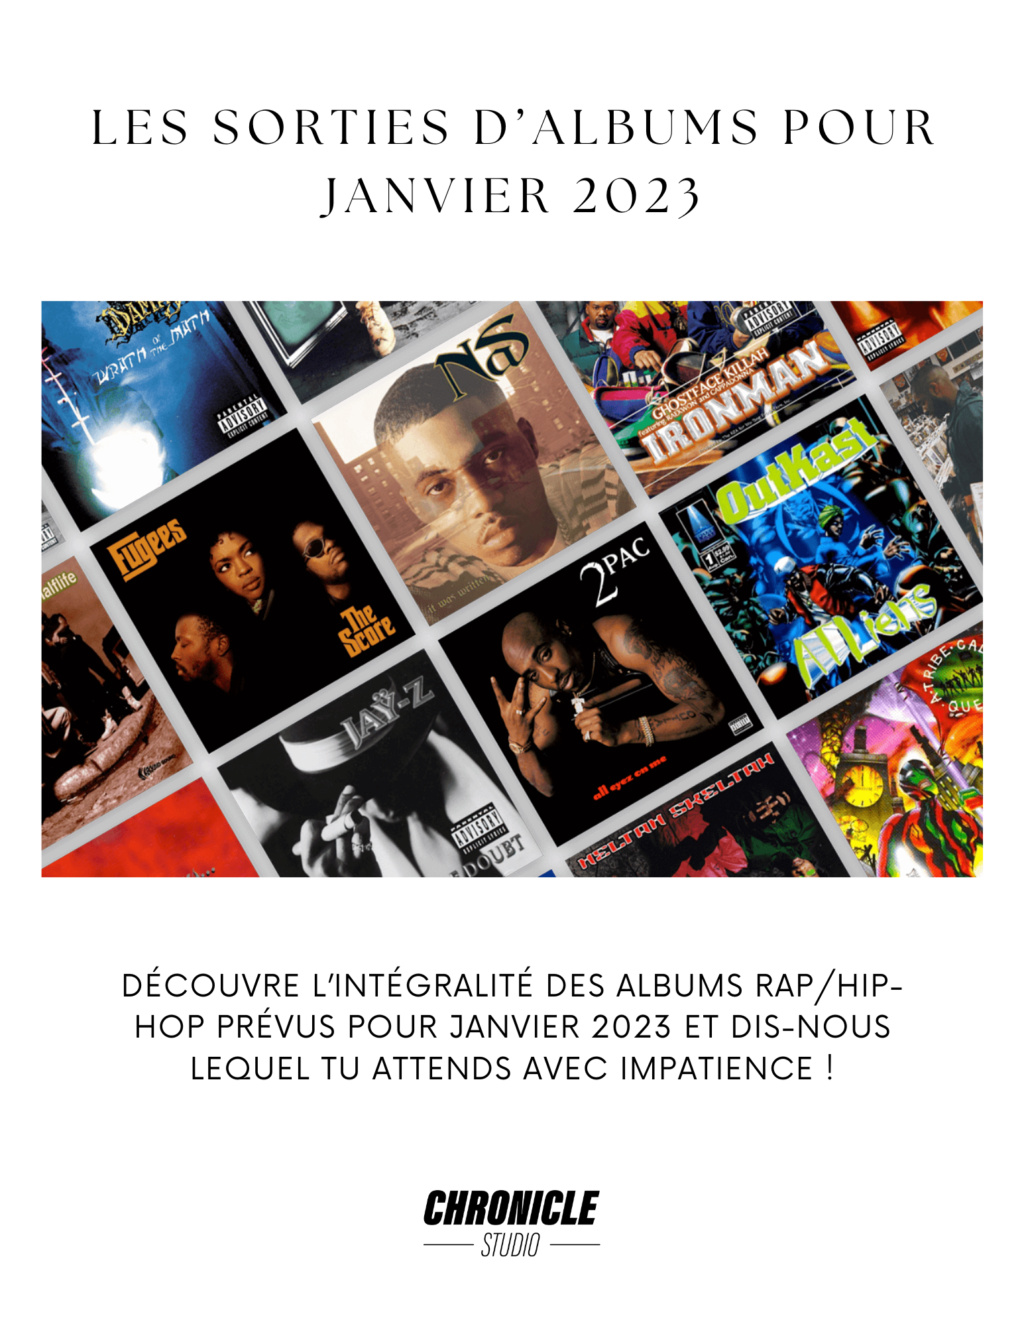 Liste des sorties d'album rap/hip-hop pour janvier 2023 190